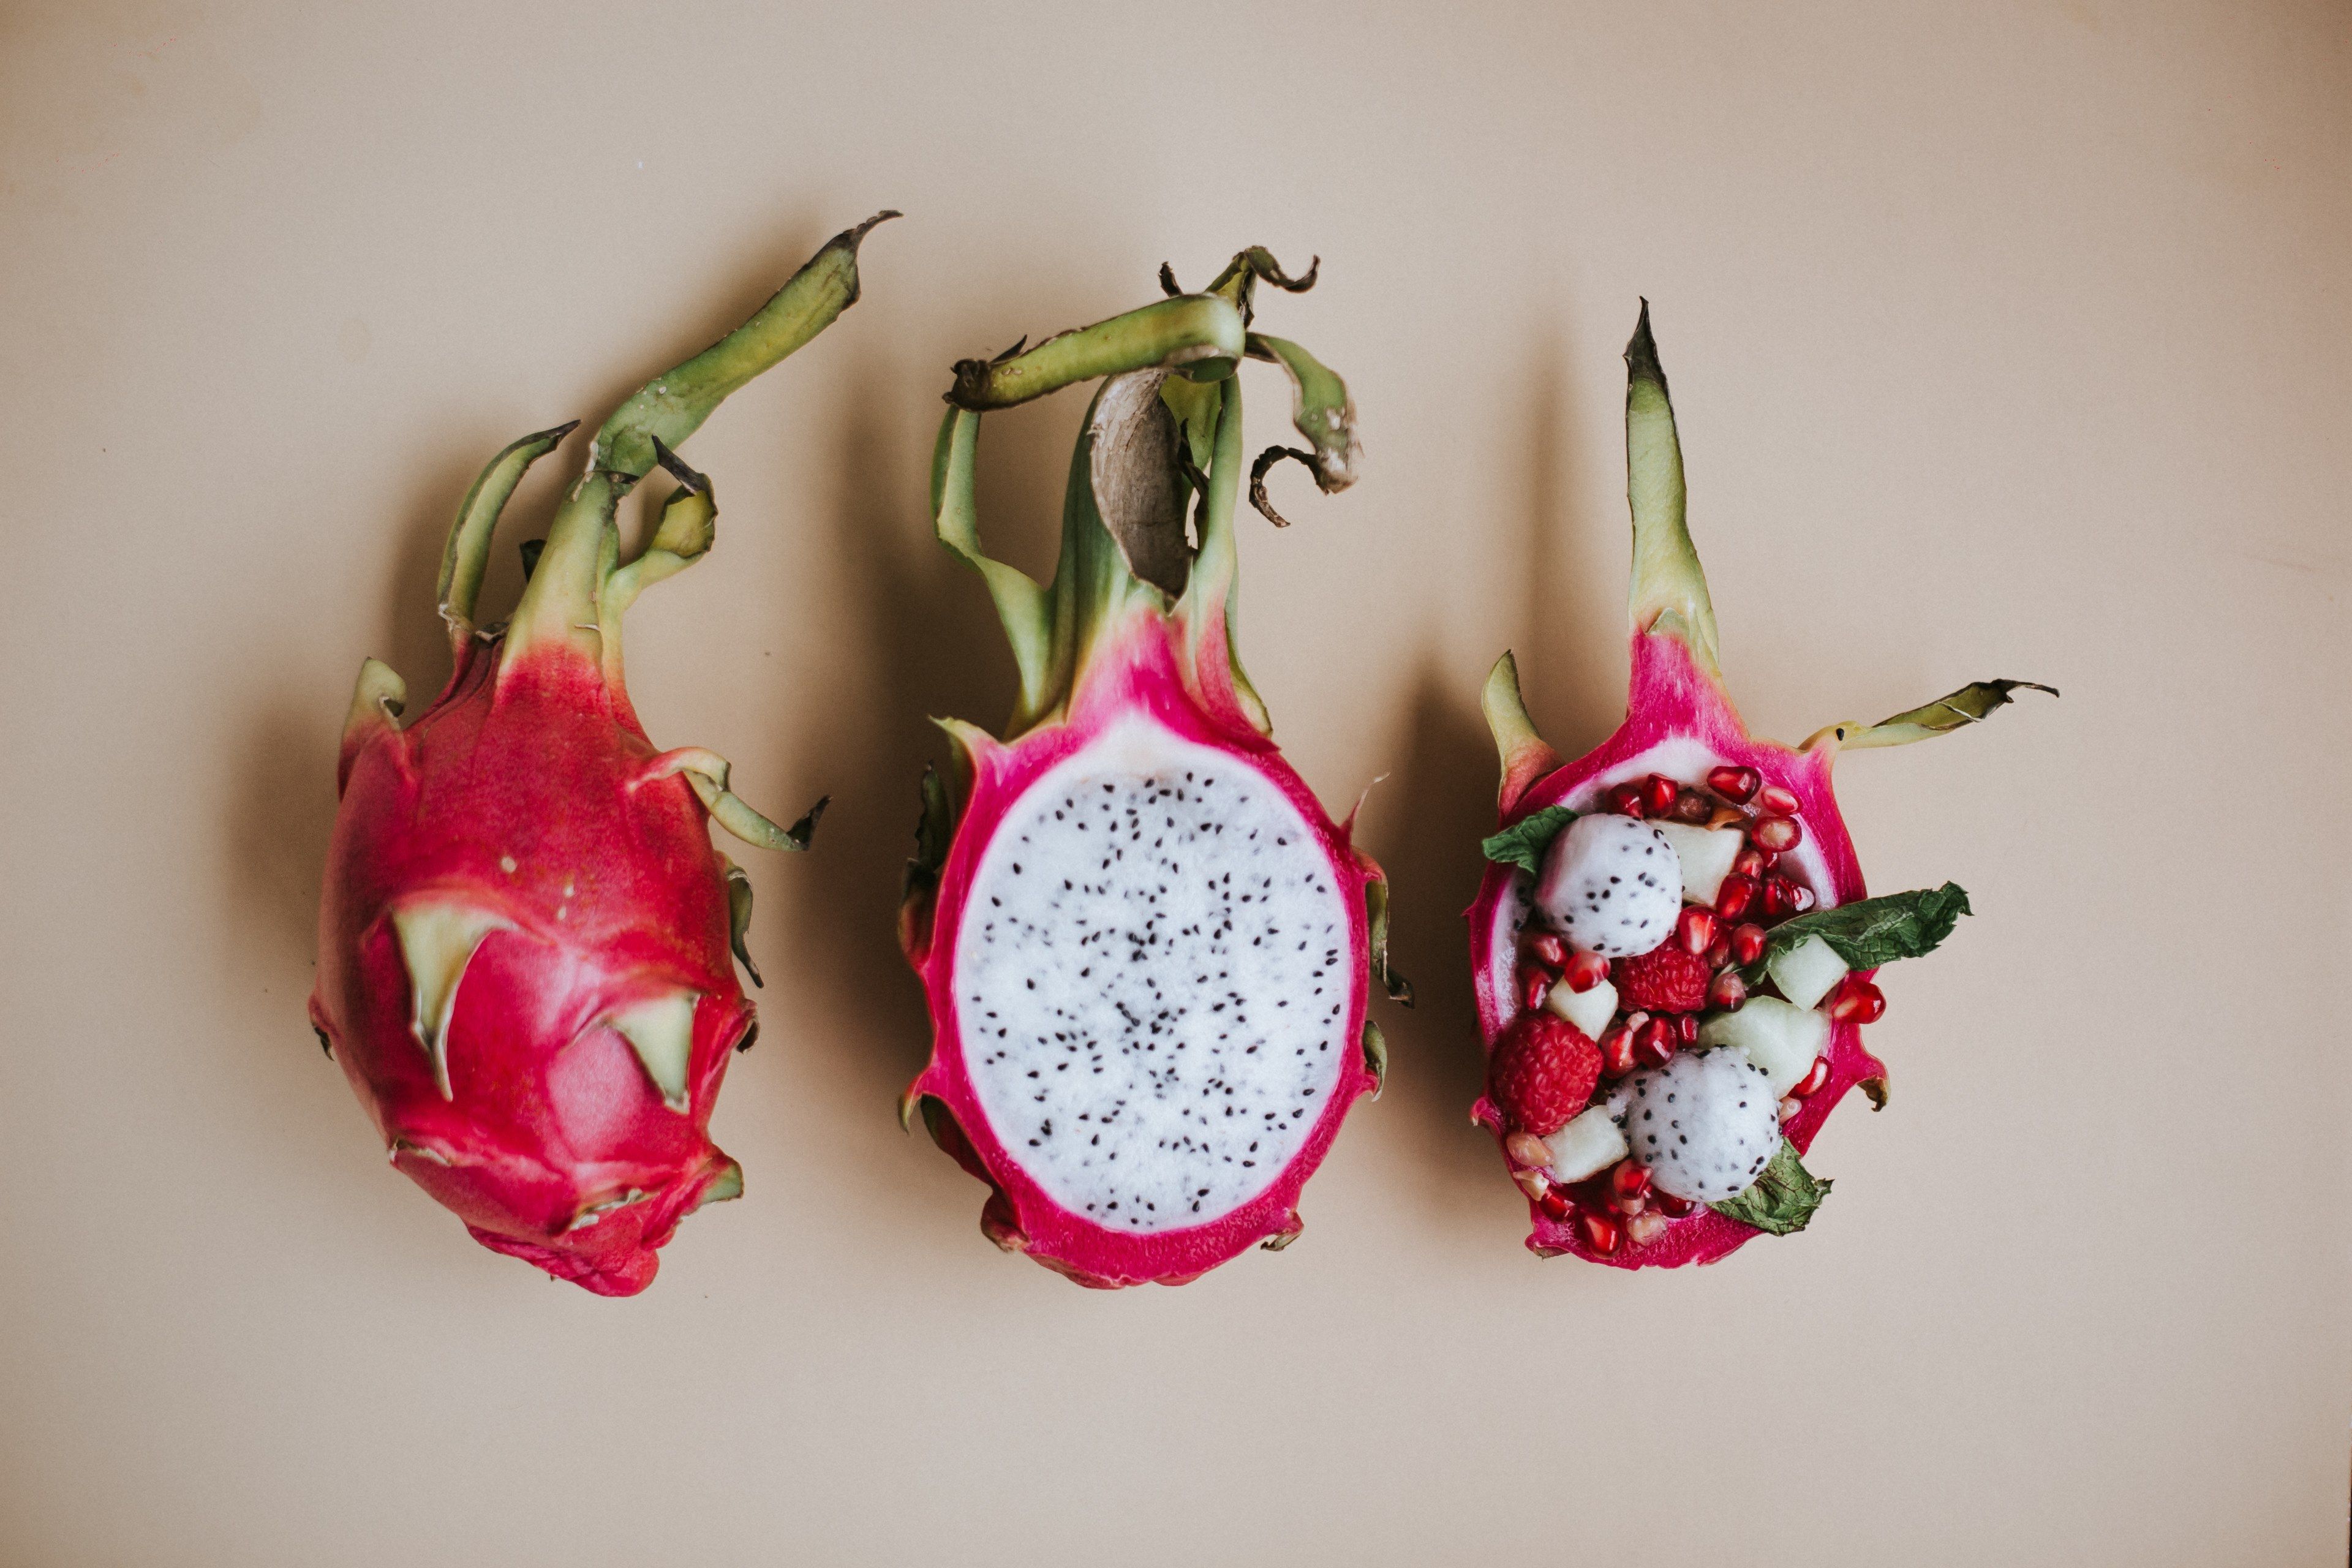 دلپذیرترین عکس میوه پیتایا یا Pitaya با تزئین انار و شاتوت تابستانی